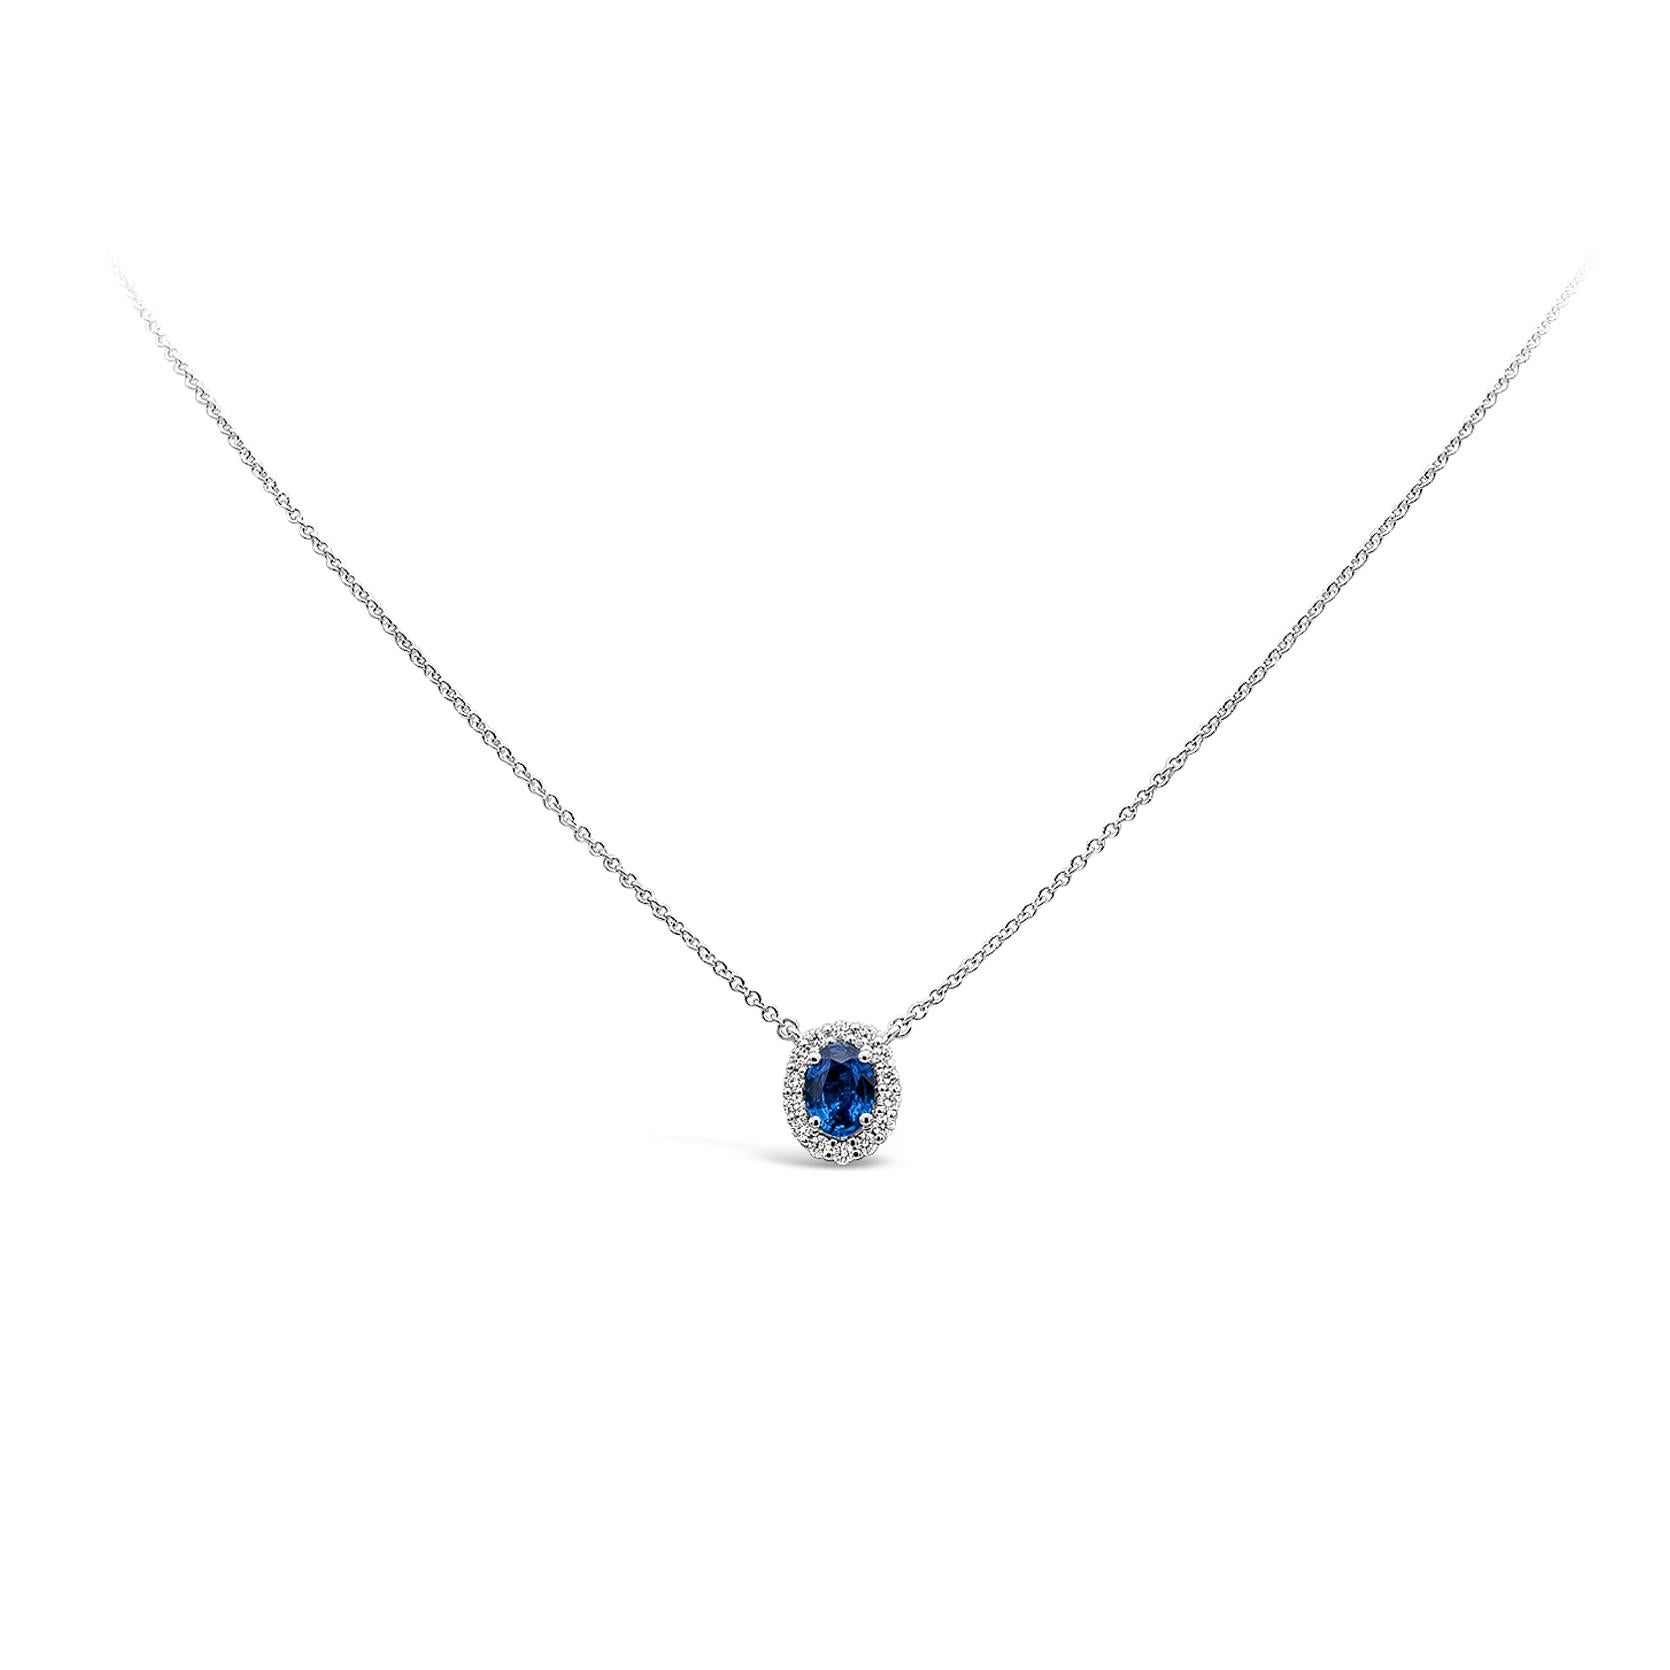 Ein schlichtes und zeitloses Schmuckstück mit einem blauen Saphir von 0,73 Karat im Ovalschliff, umgeben von einer einzigen Reihe runder Brillanten von insgesamt 0,23 Karat, Farbe G und Reinheit SI1. Aufgehängt an einer verstellbaren